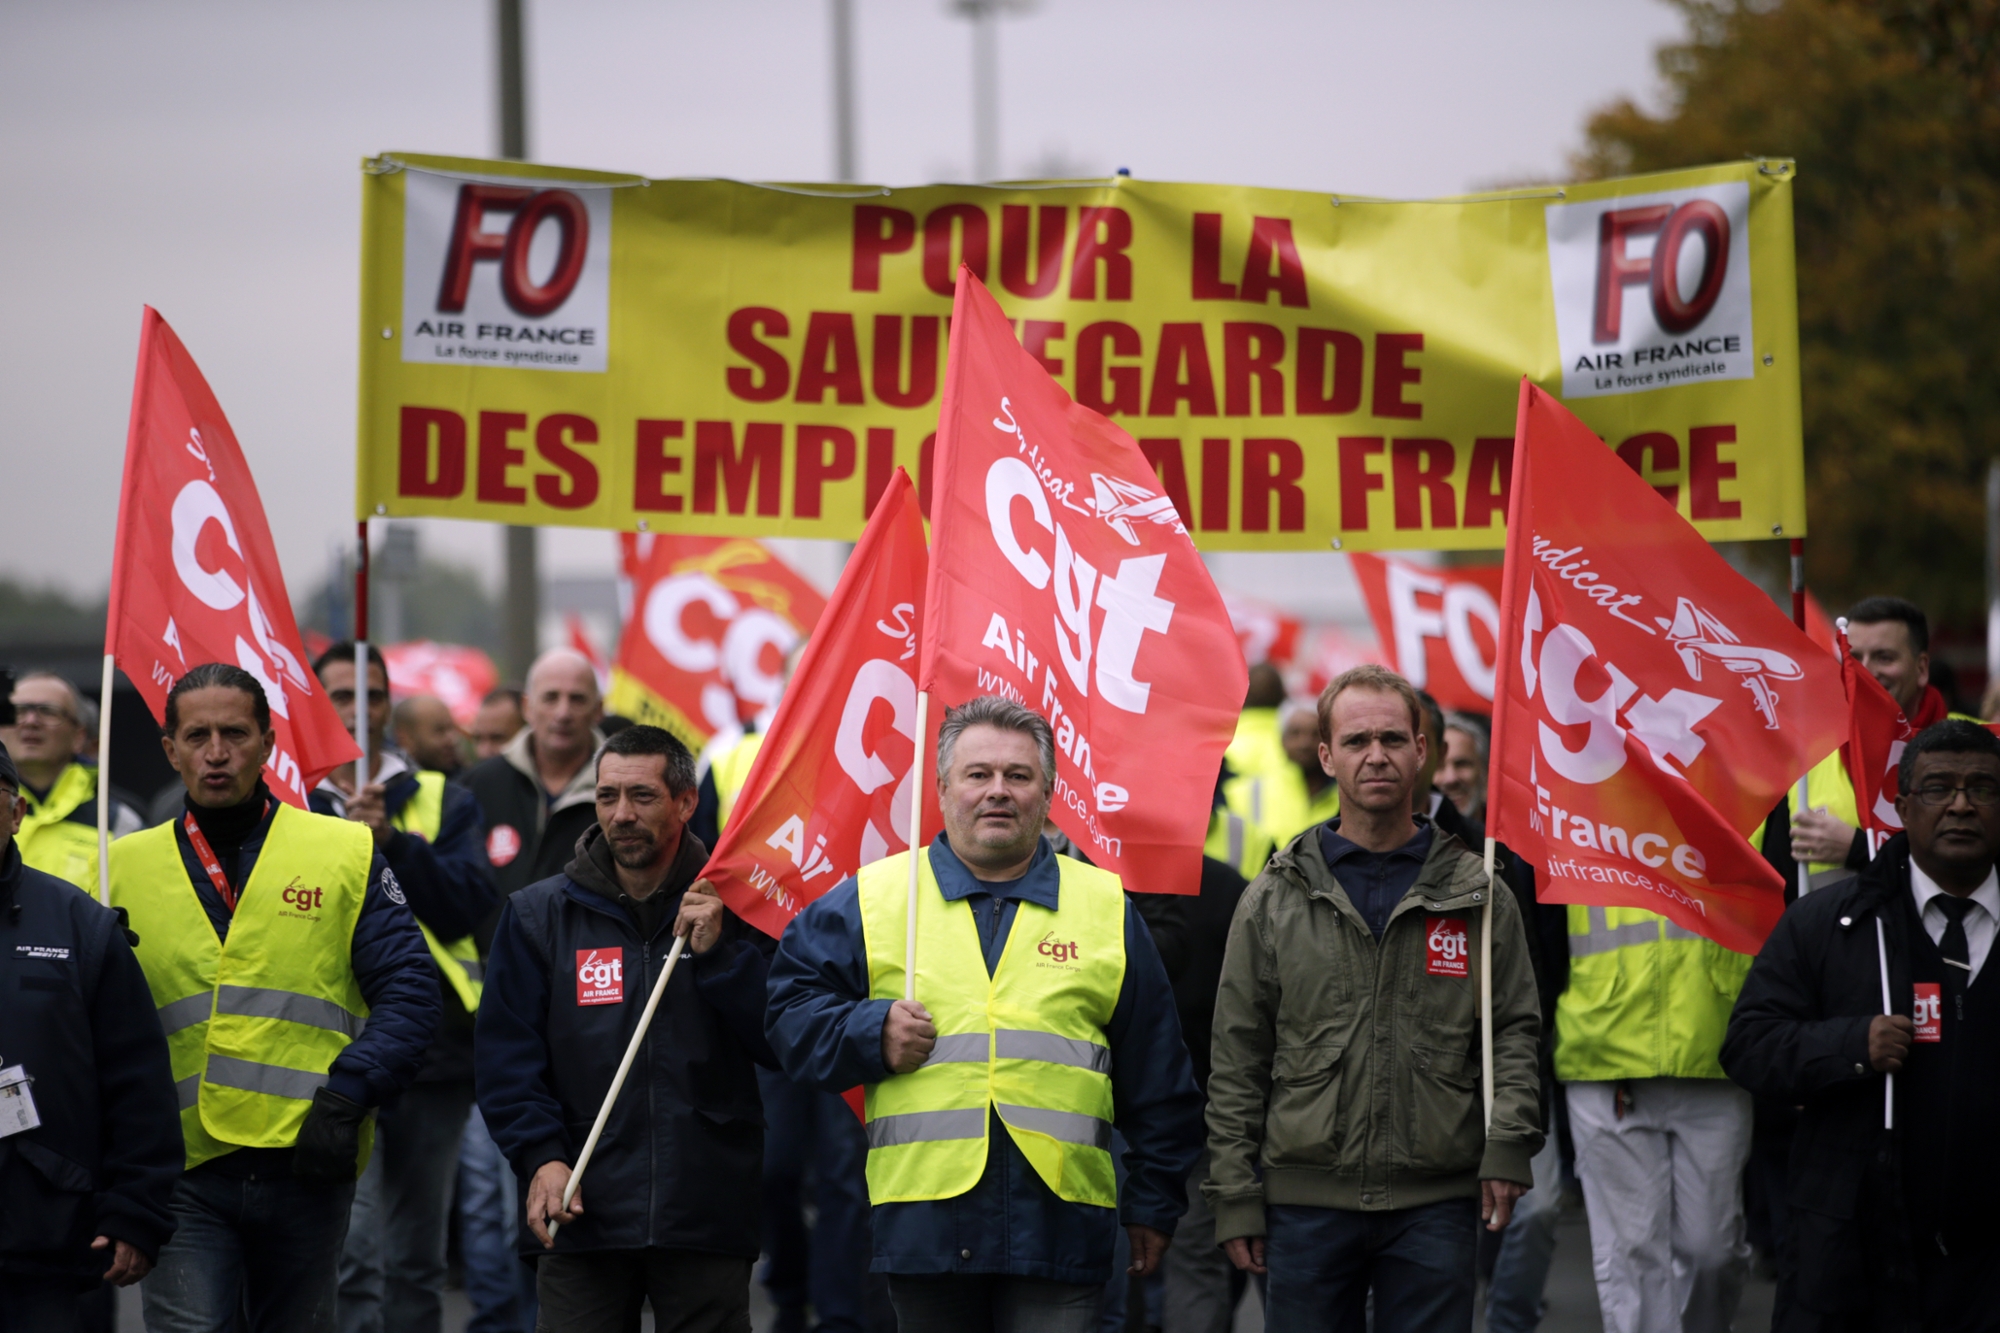 reforme des retraites les syndicats opposes a repousser lage legal de depart a 65 ans